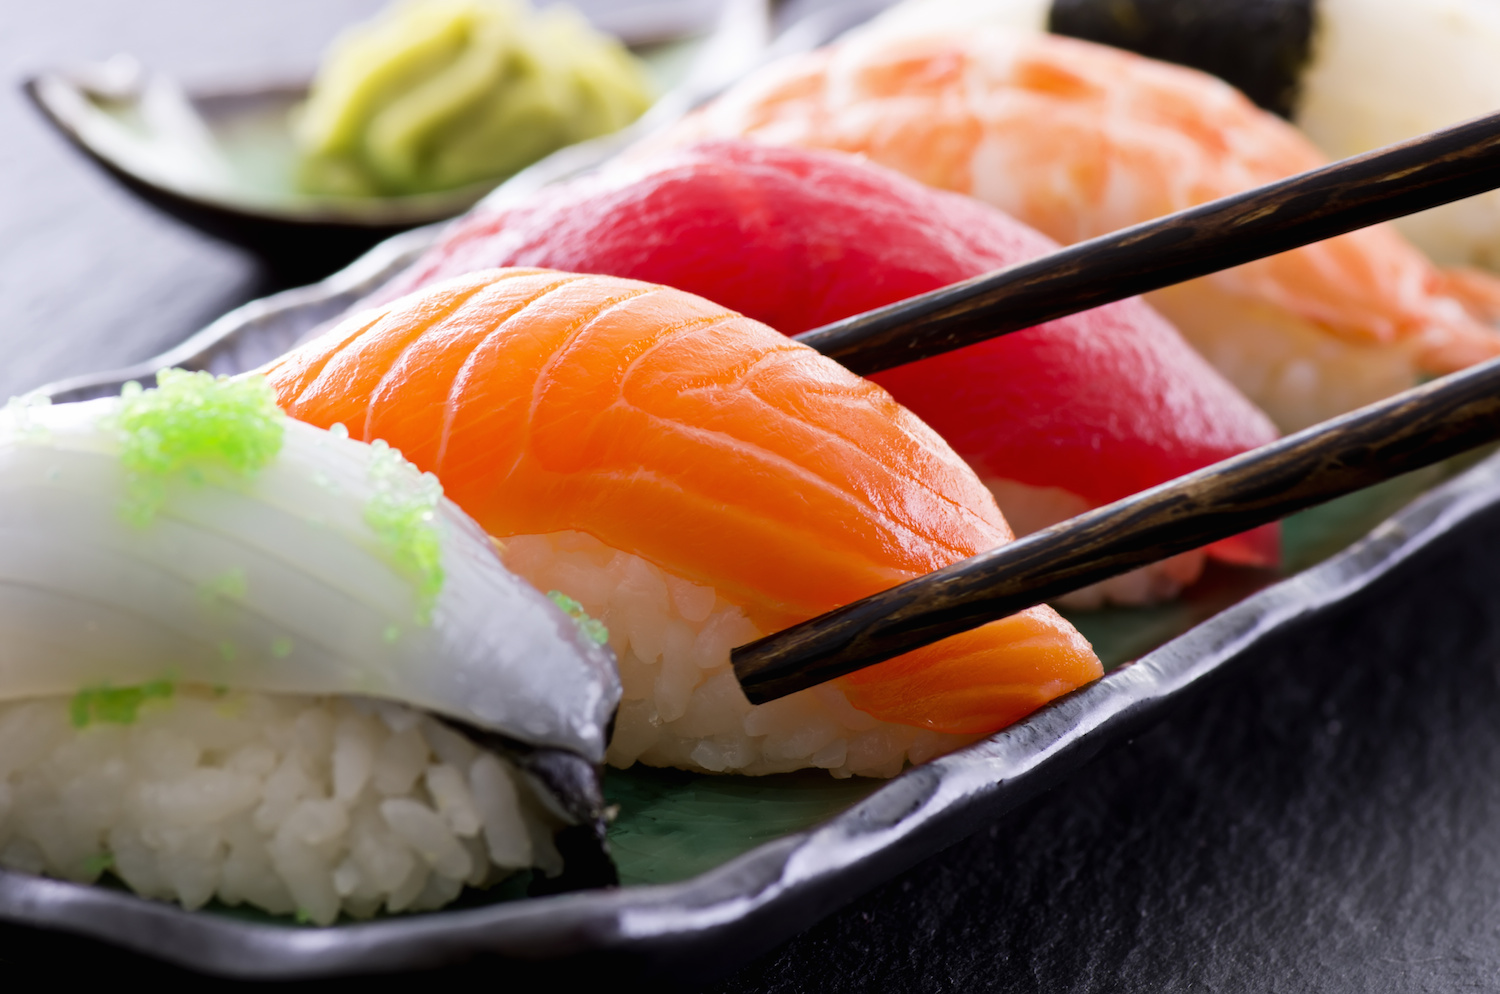 sushi ajuta u pierde in greutate